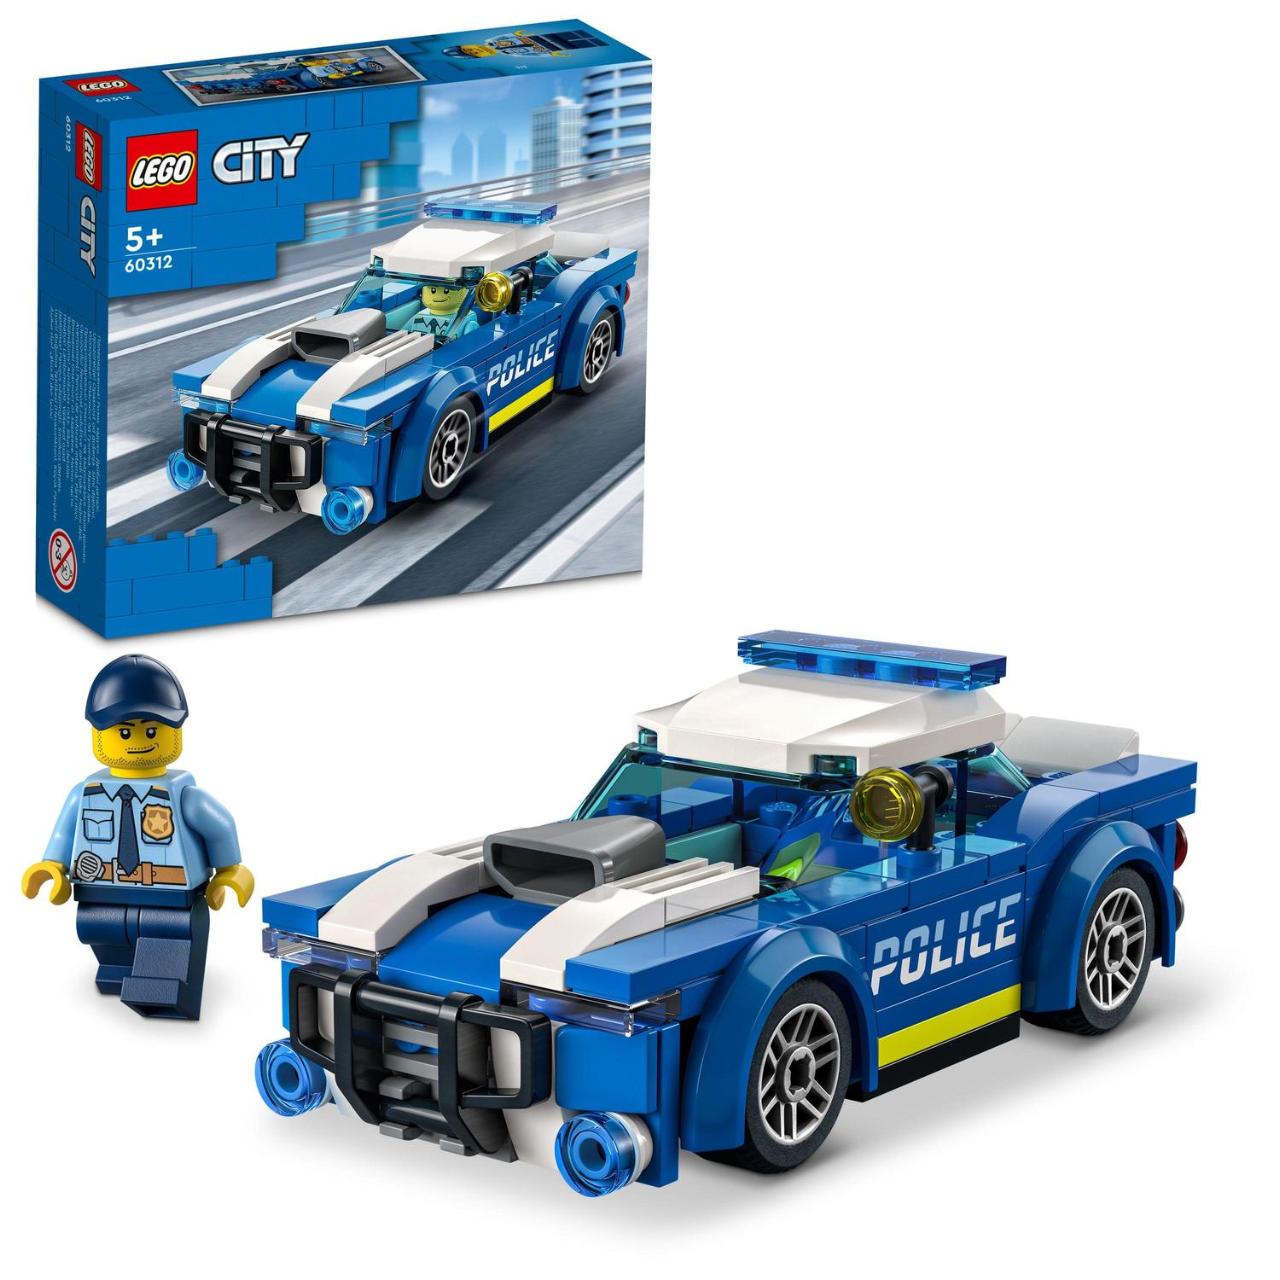 LEGO City, Masina de politie, numar piese 94, varsta 5+